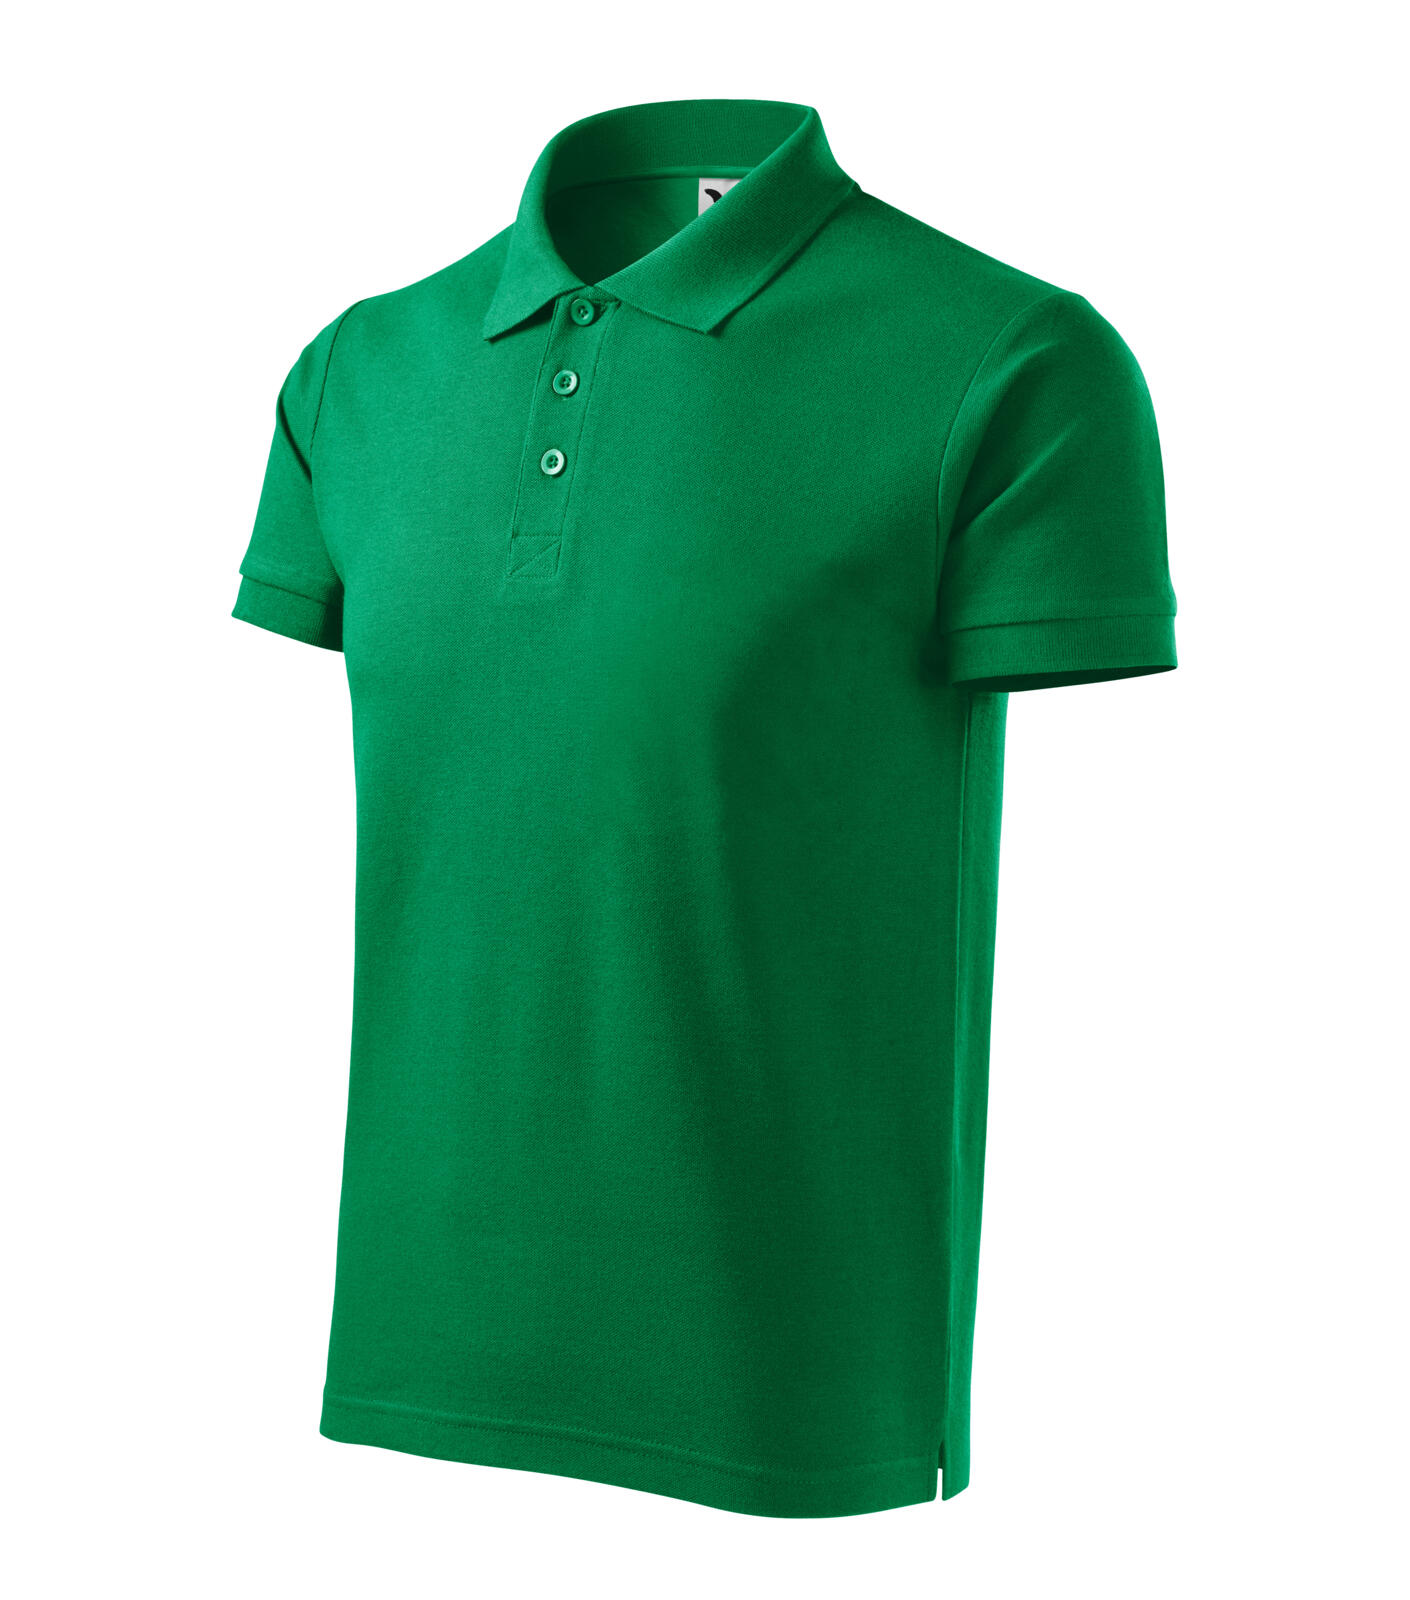 Cotton Heavy Polokošile pánská Barva: středně zelená, Velikost: M